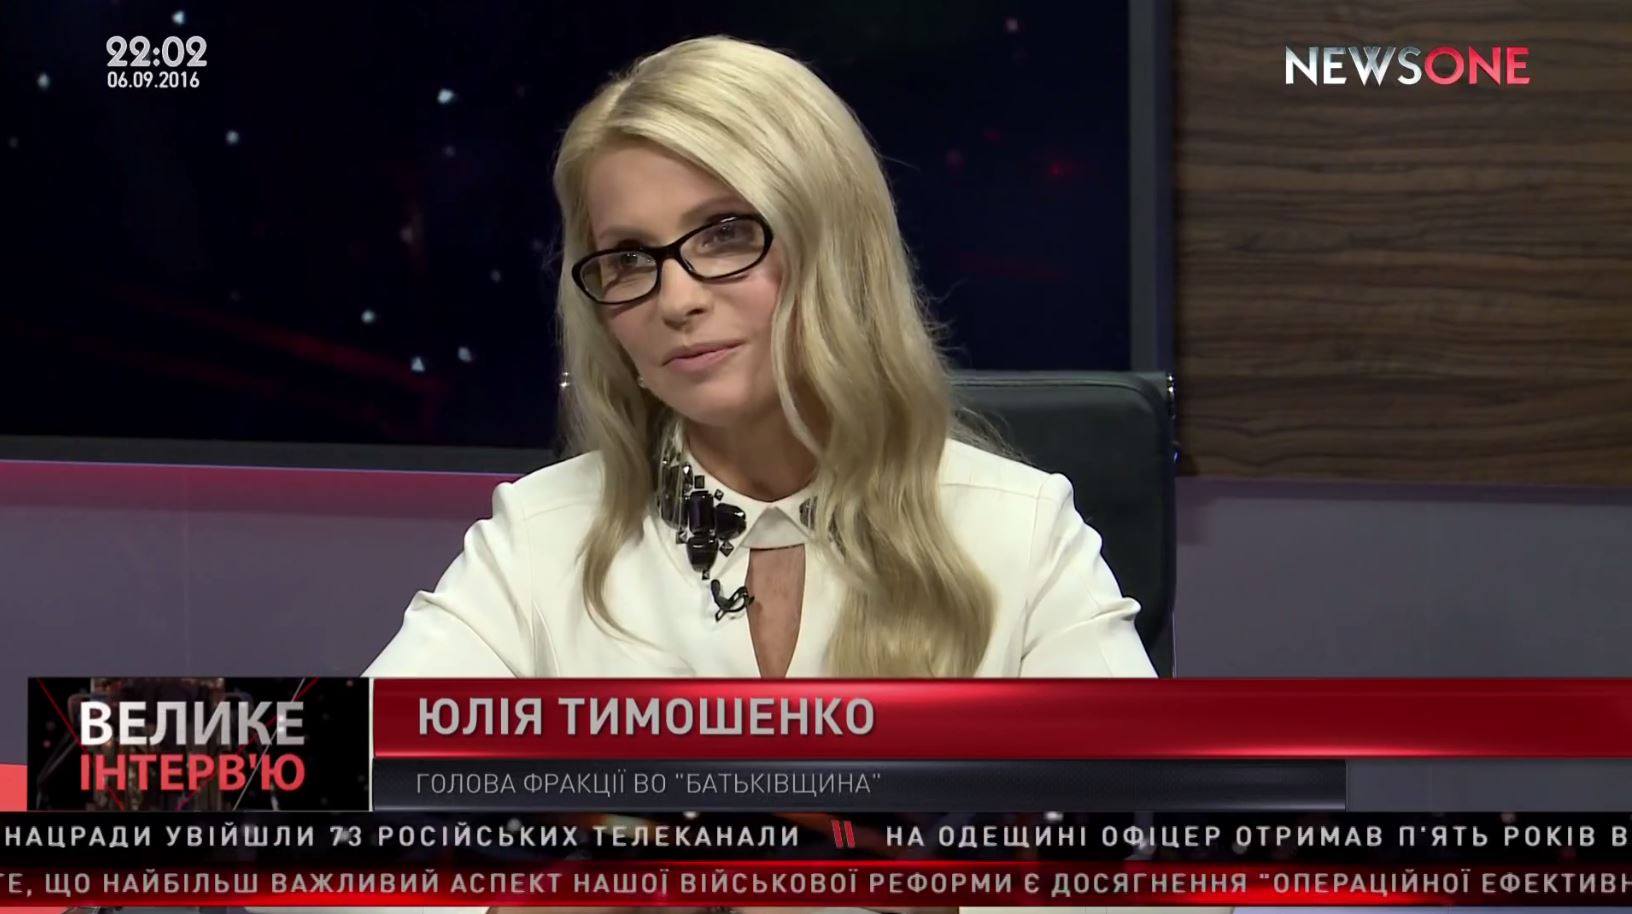 Дострокові парламентські вибори – єдиний вихід із критичної ситуації в державі, – Тимошенко